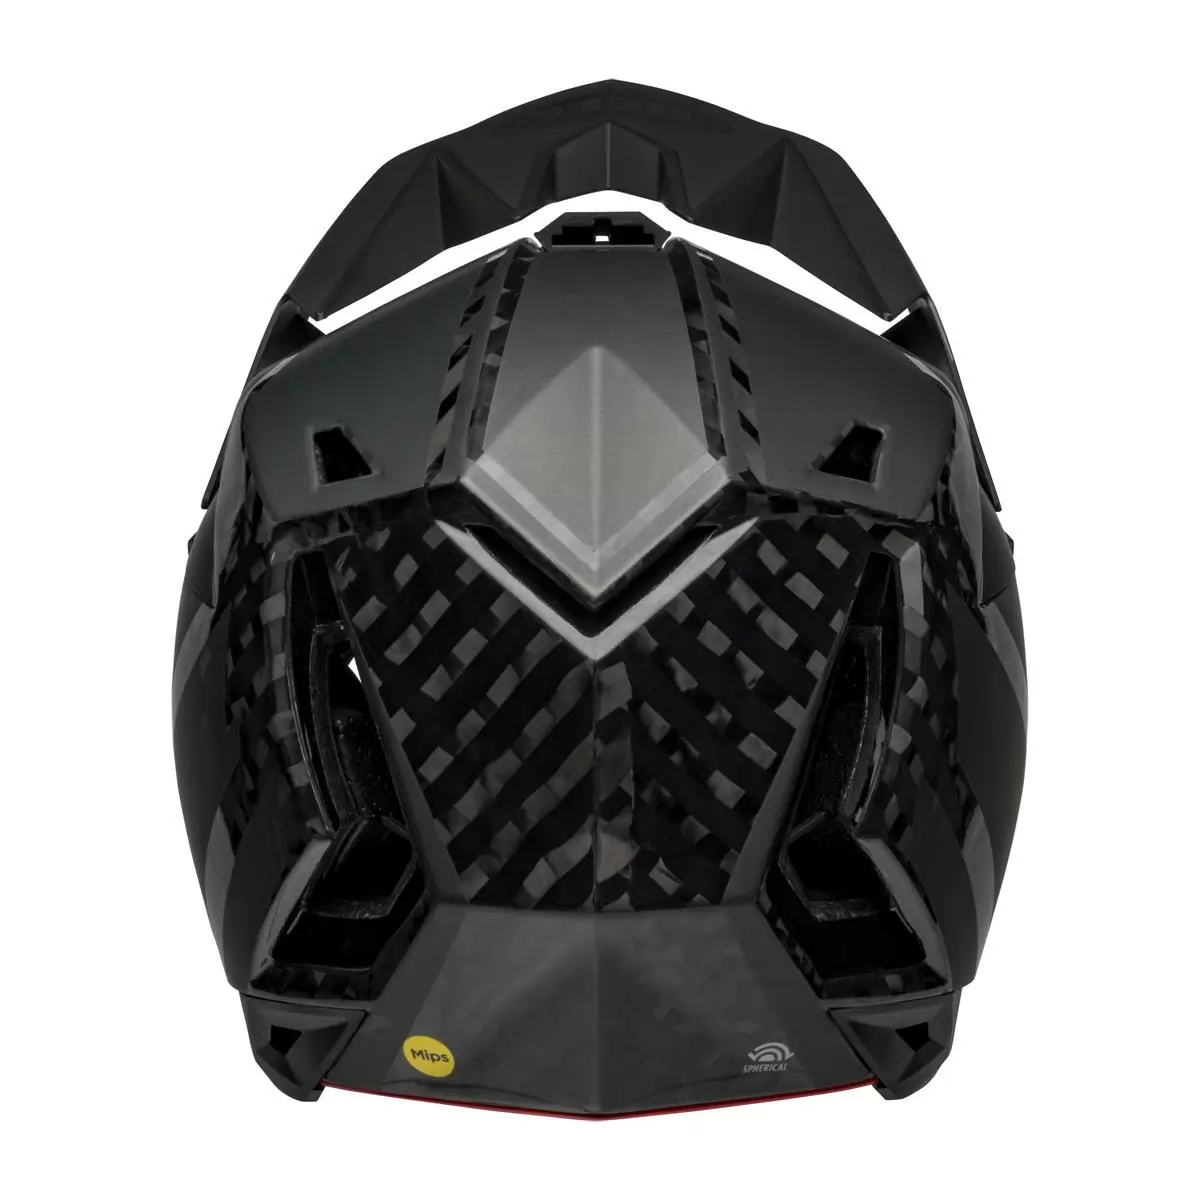 Full-10 Spherical Arise Matte / Gloss Black Carbon Full Face Helmet Size XS/S (51-55cm) #5